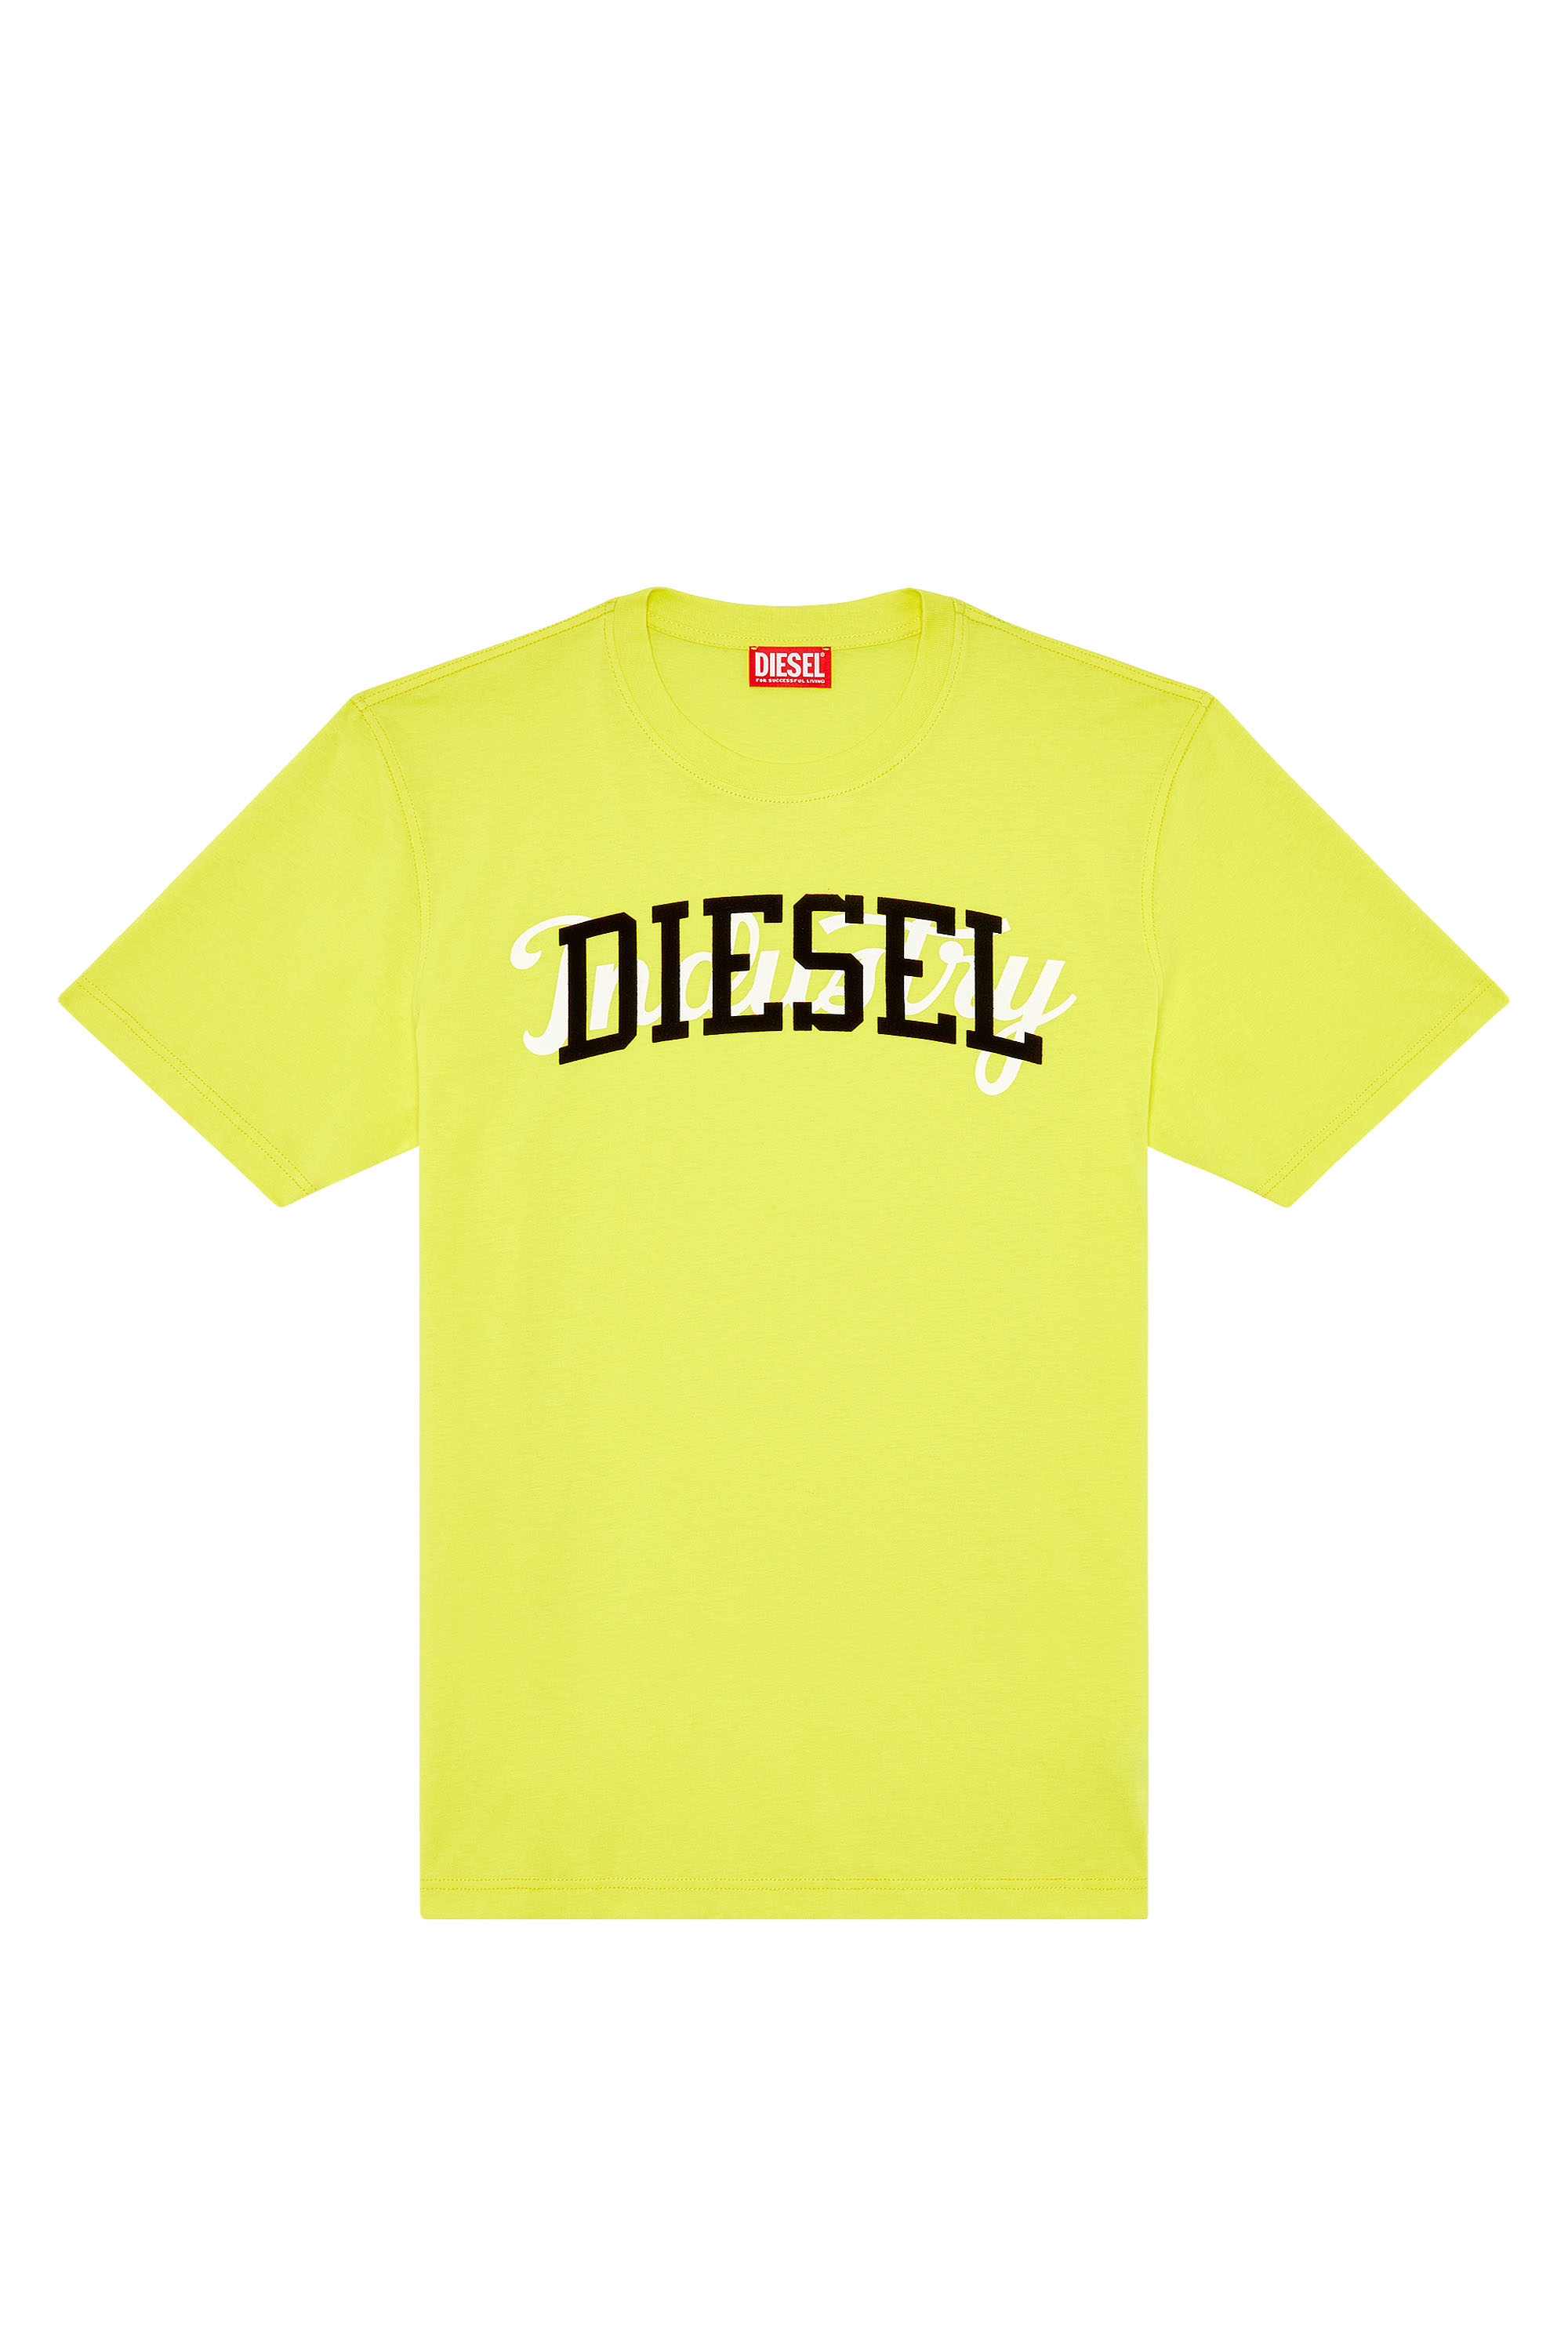 Diesel - T-JUST-N10, Giallo - Image 4